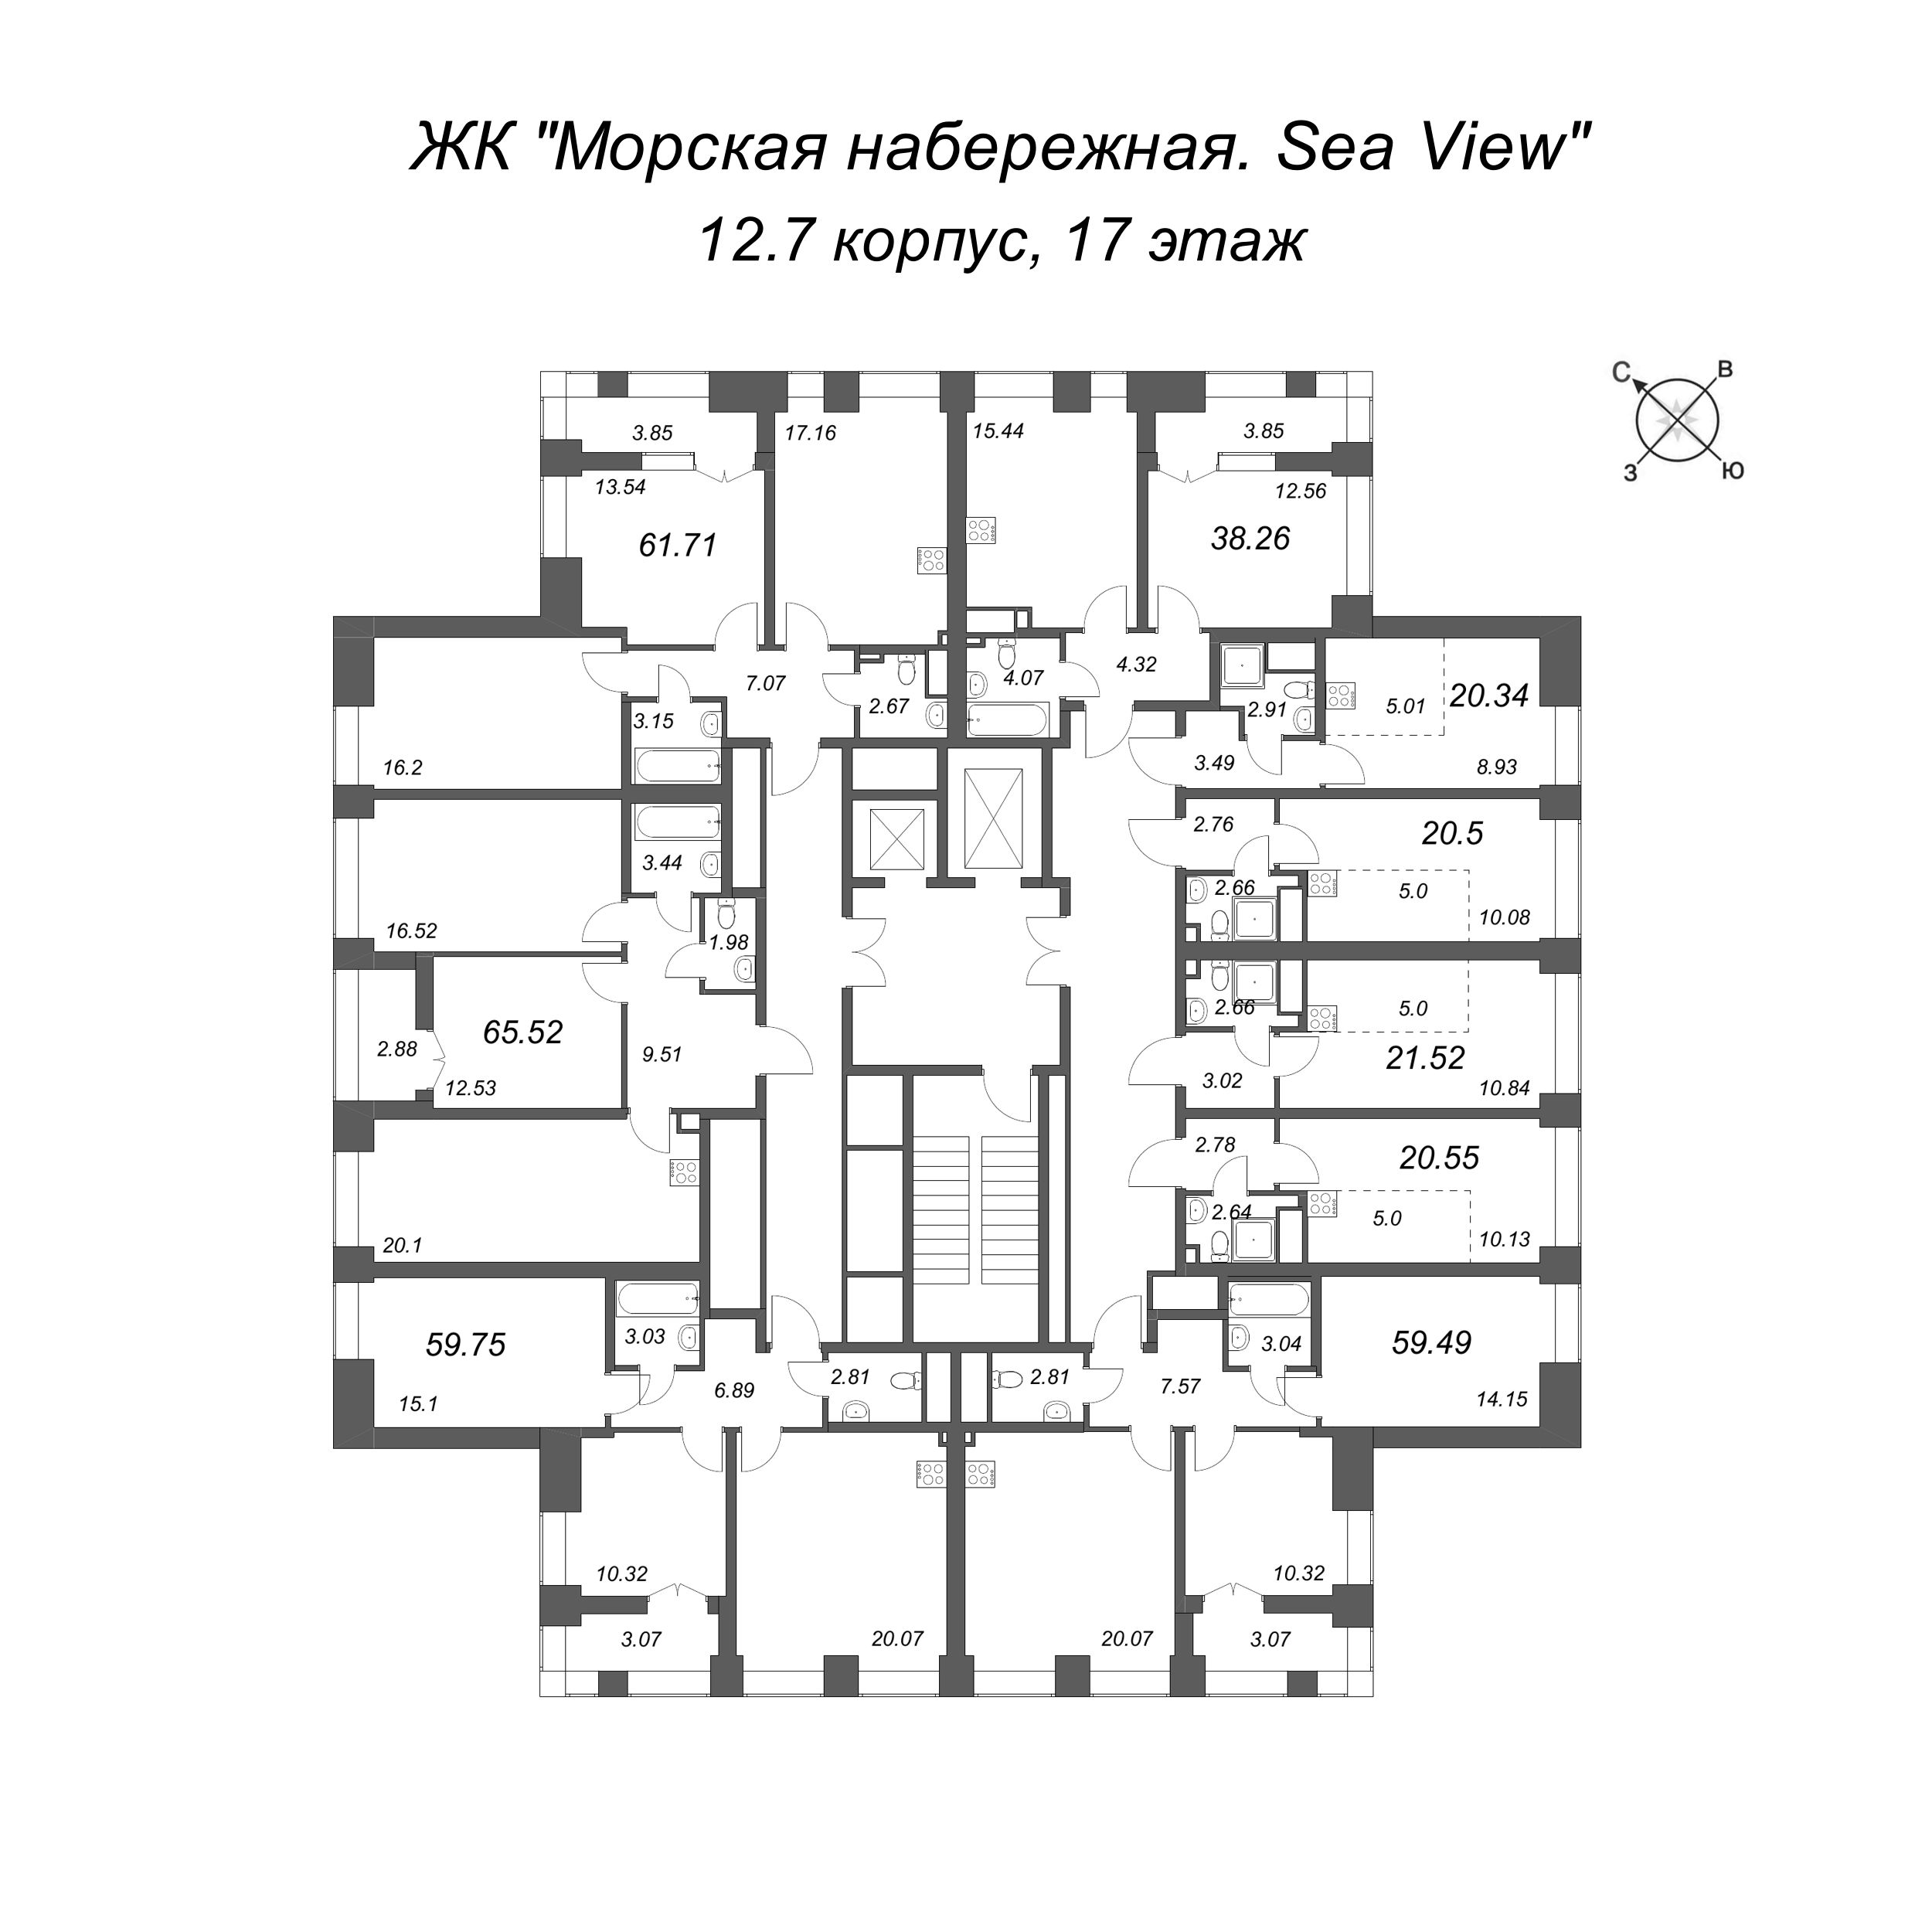 Квартира-студия, 20.34 м² в ЖК "Морская набережная. SeaView" - планировка этажа